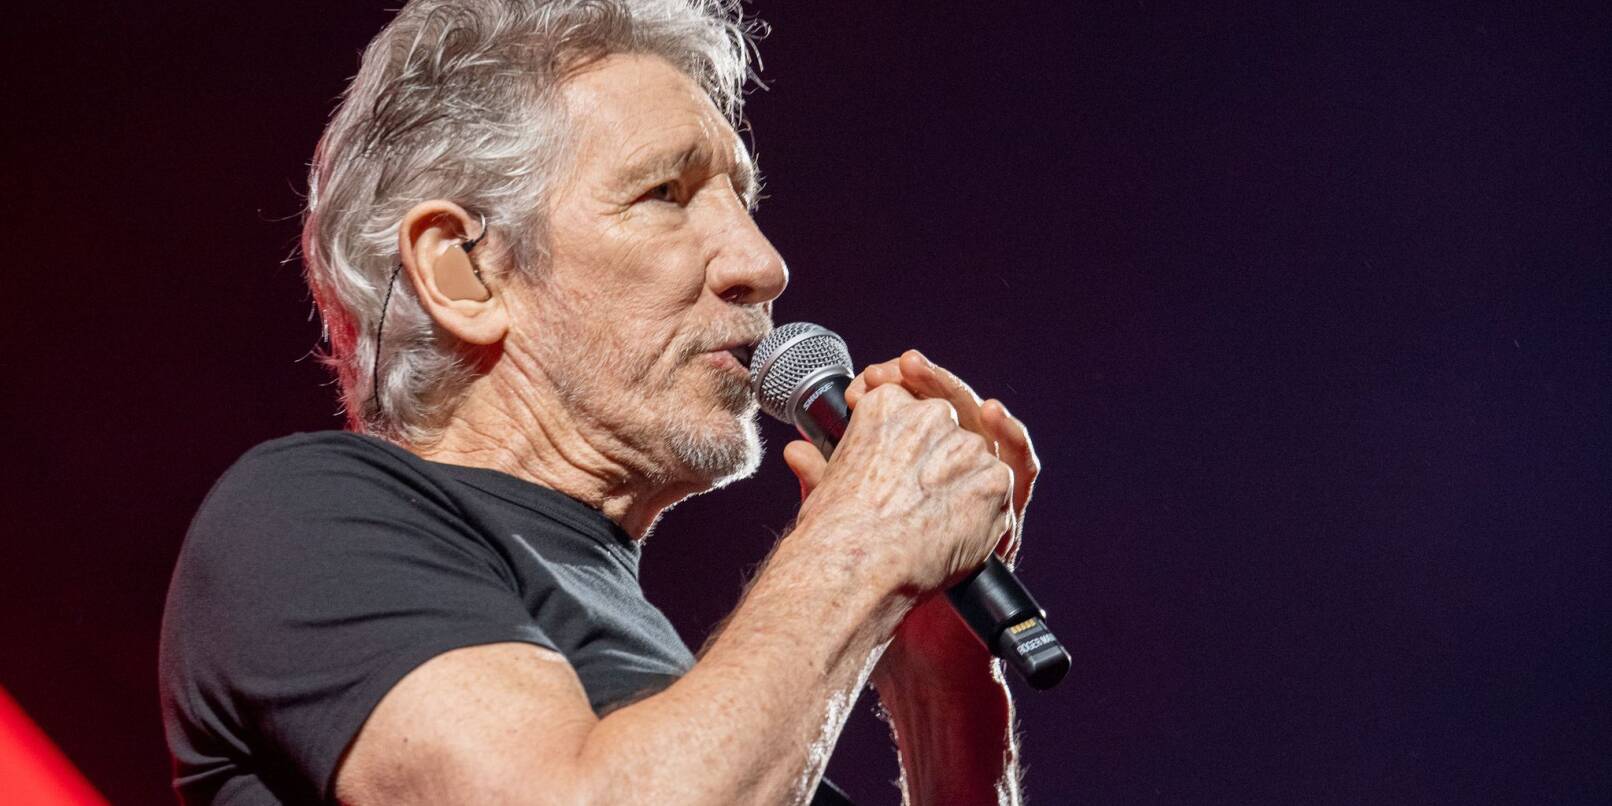 Roger Waters, britischer Sänger und Mitbegründer der Rockband Pink Floyd, während eines Auftritts.